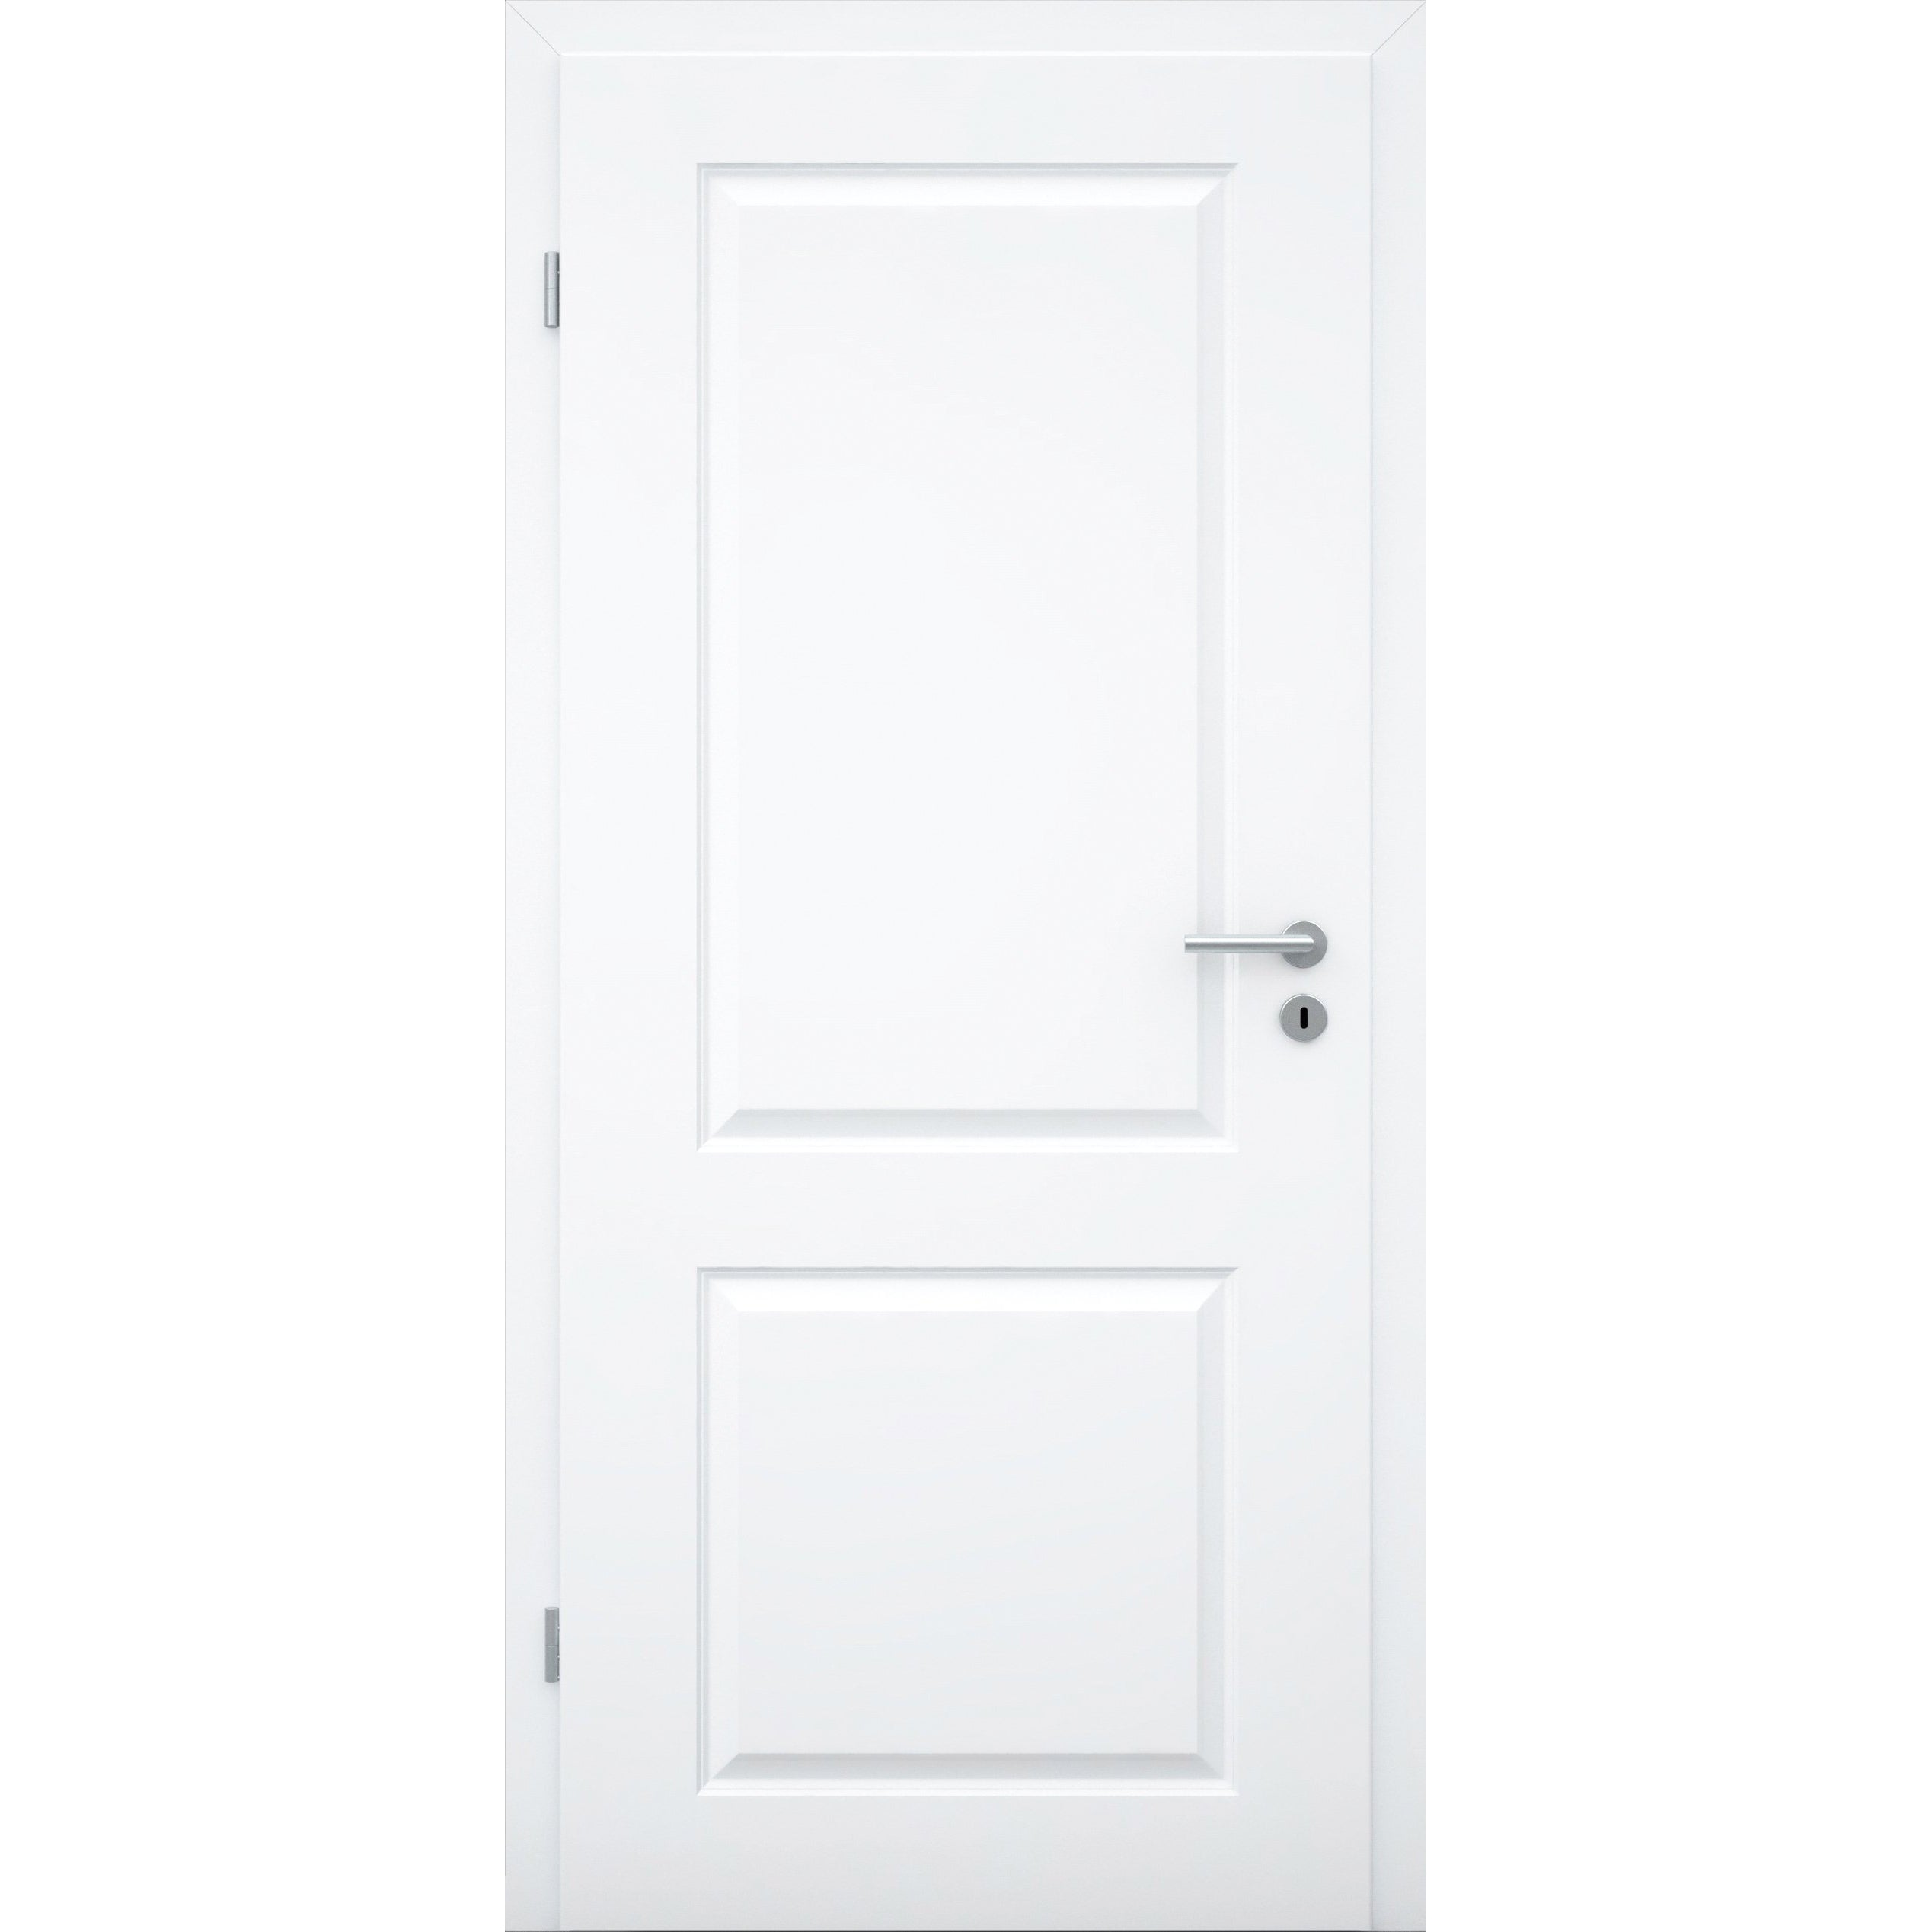 Zimmertür brillant-weiß 2 Kassetten Designkante - Modell Stiltür K23